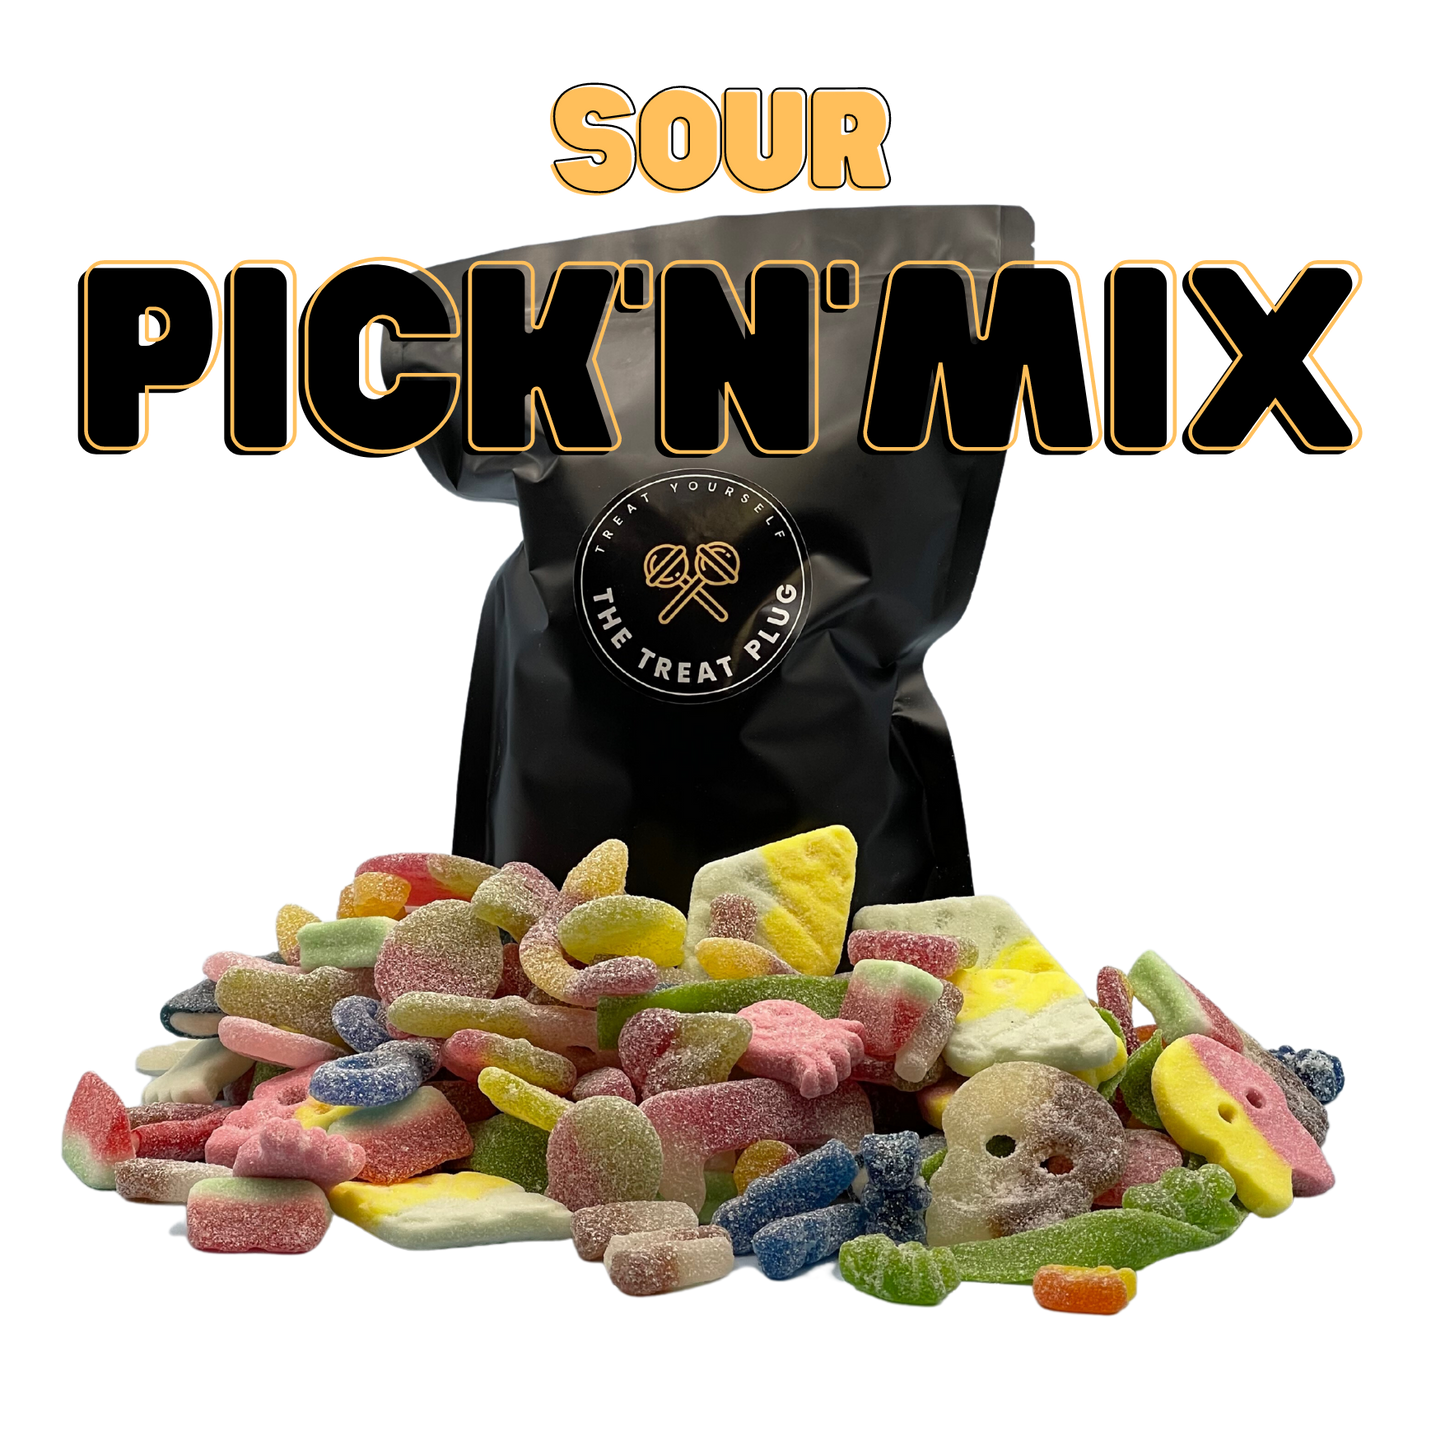 The Sour Mix